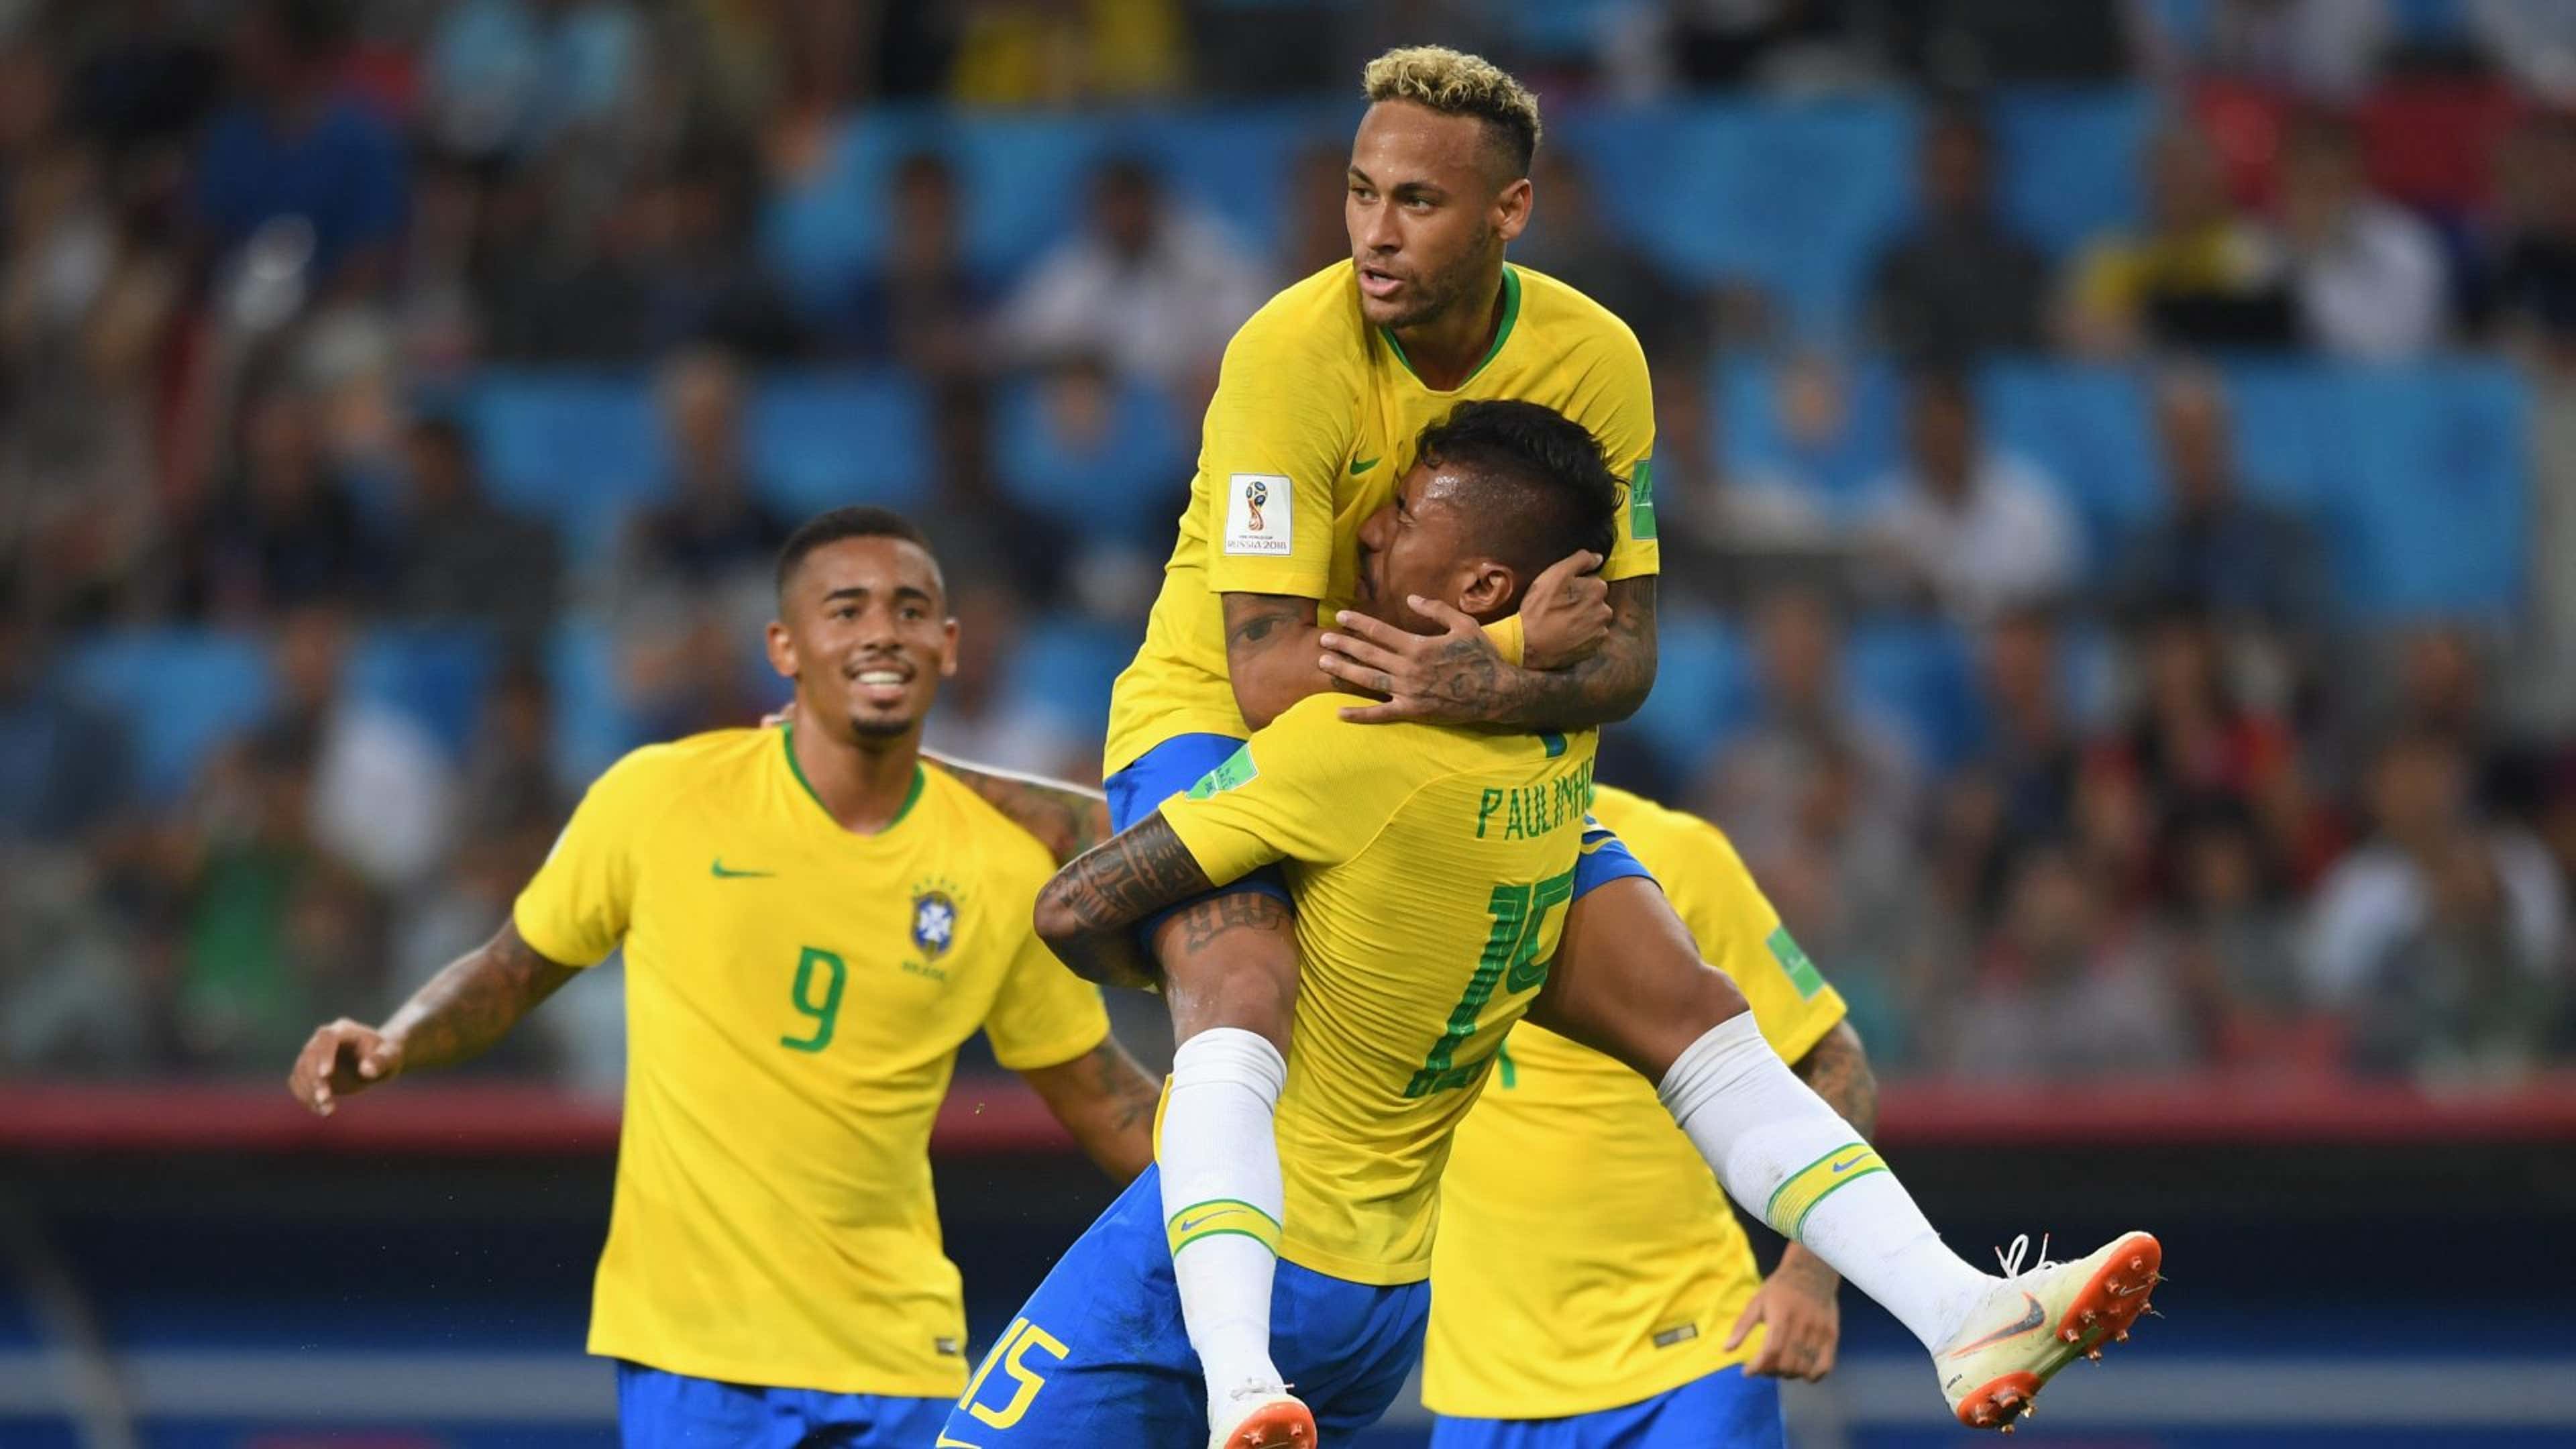 Brasil x Sérvia na Copa de 2018: quanto foi, gols, escalação e